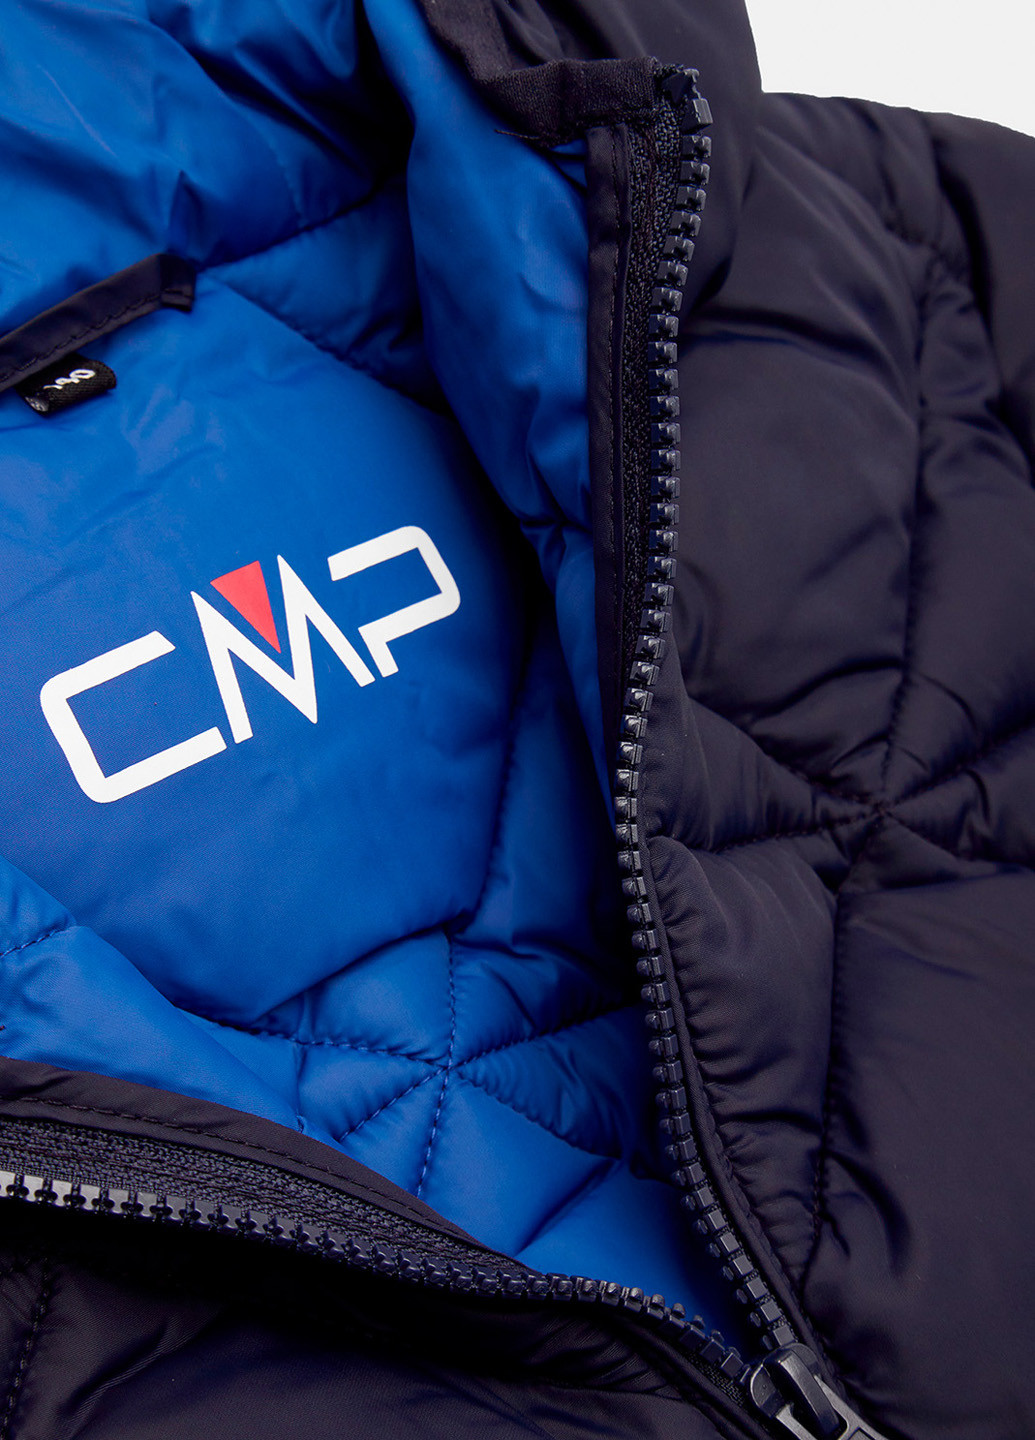 Темно-синяя зимняя куртка CMP KID G COAT FIX HOOD